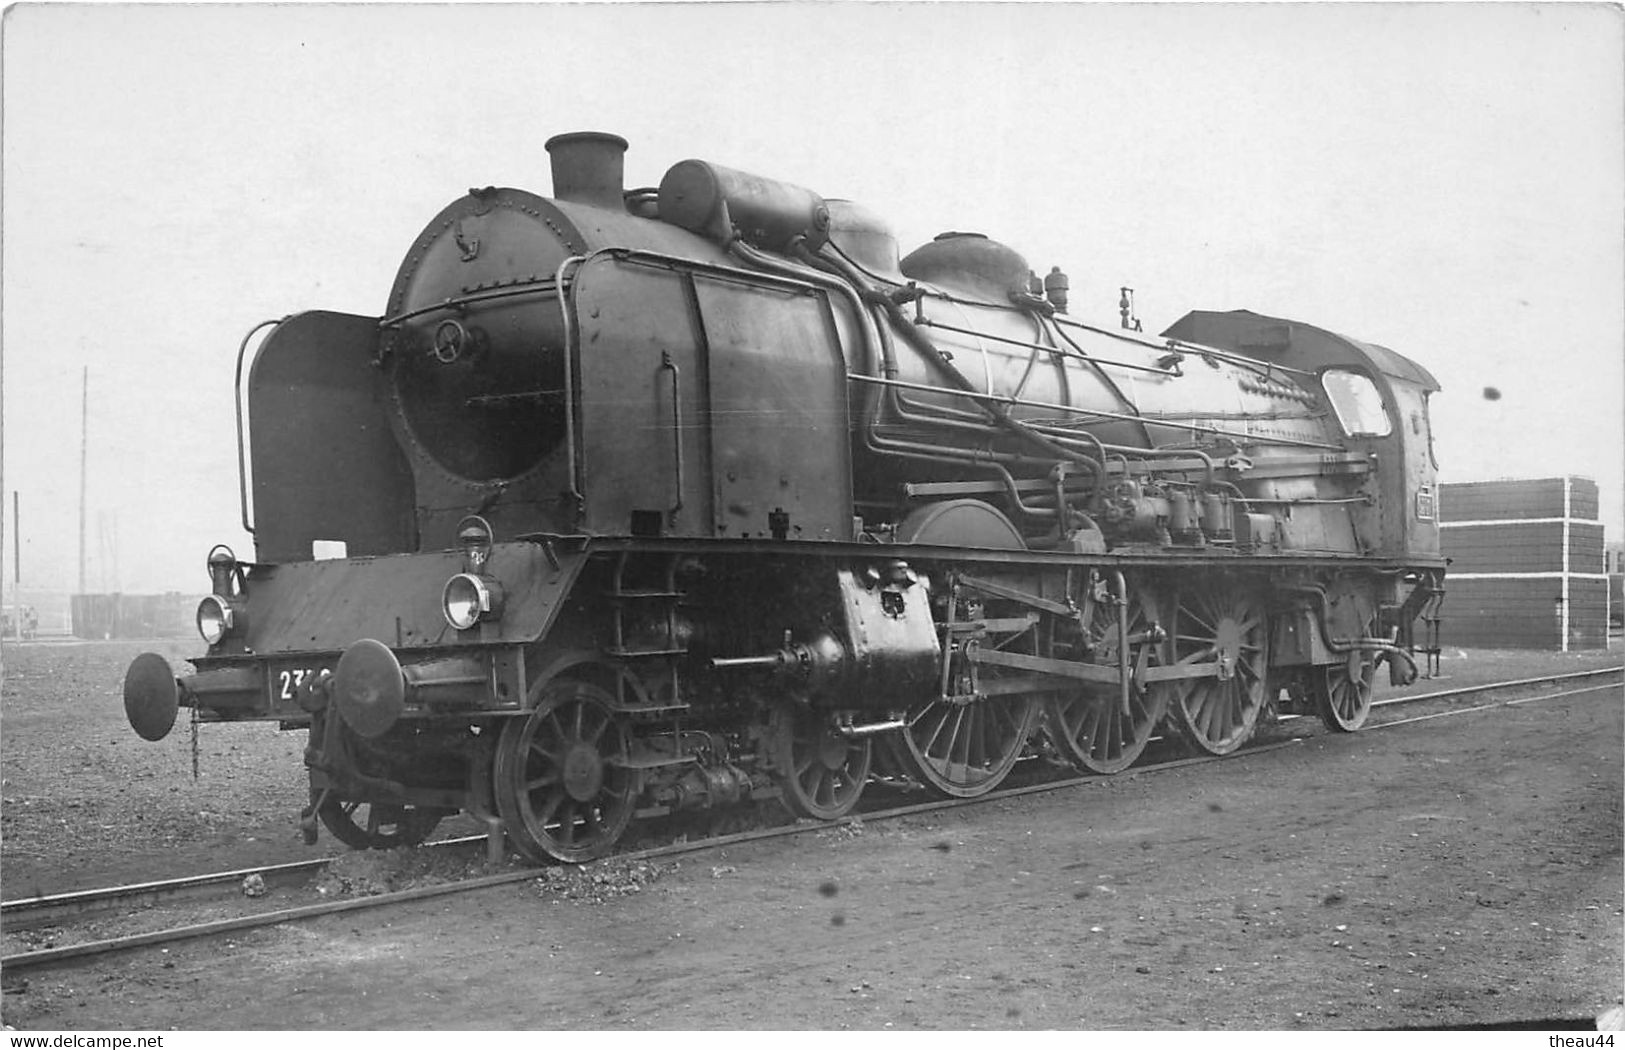 ¤¤   -  Carte-Photo D'une Locomotive Ancienne   -  Chemin De Fer Du P.L.M.        -  ¤¤ - Zubehör